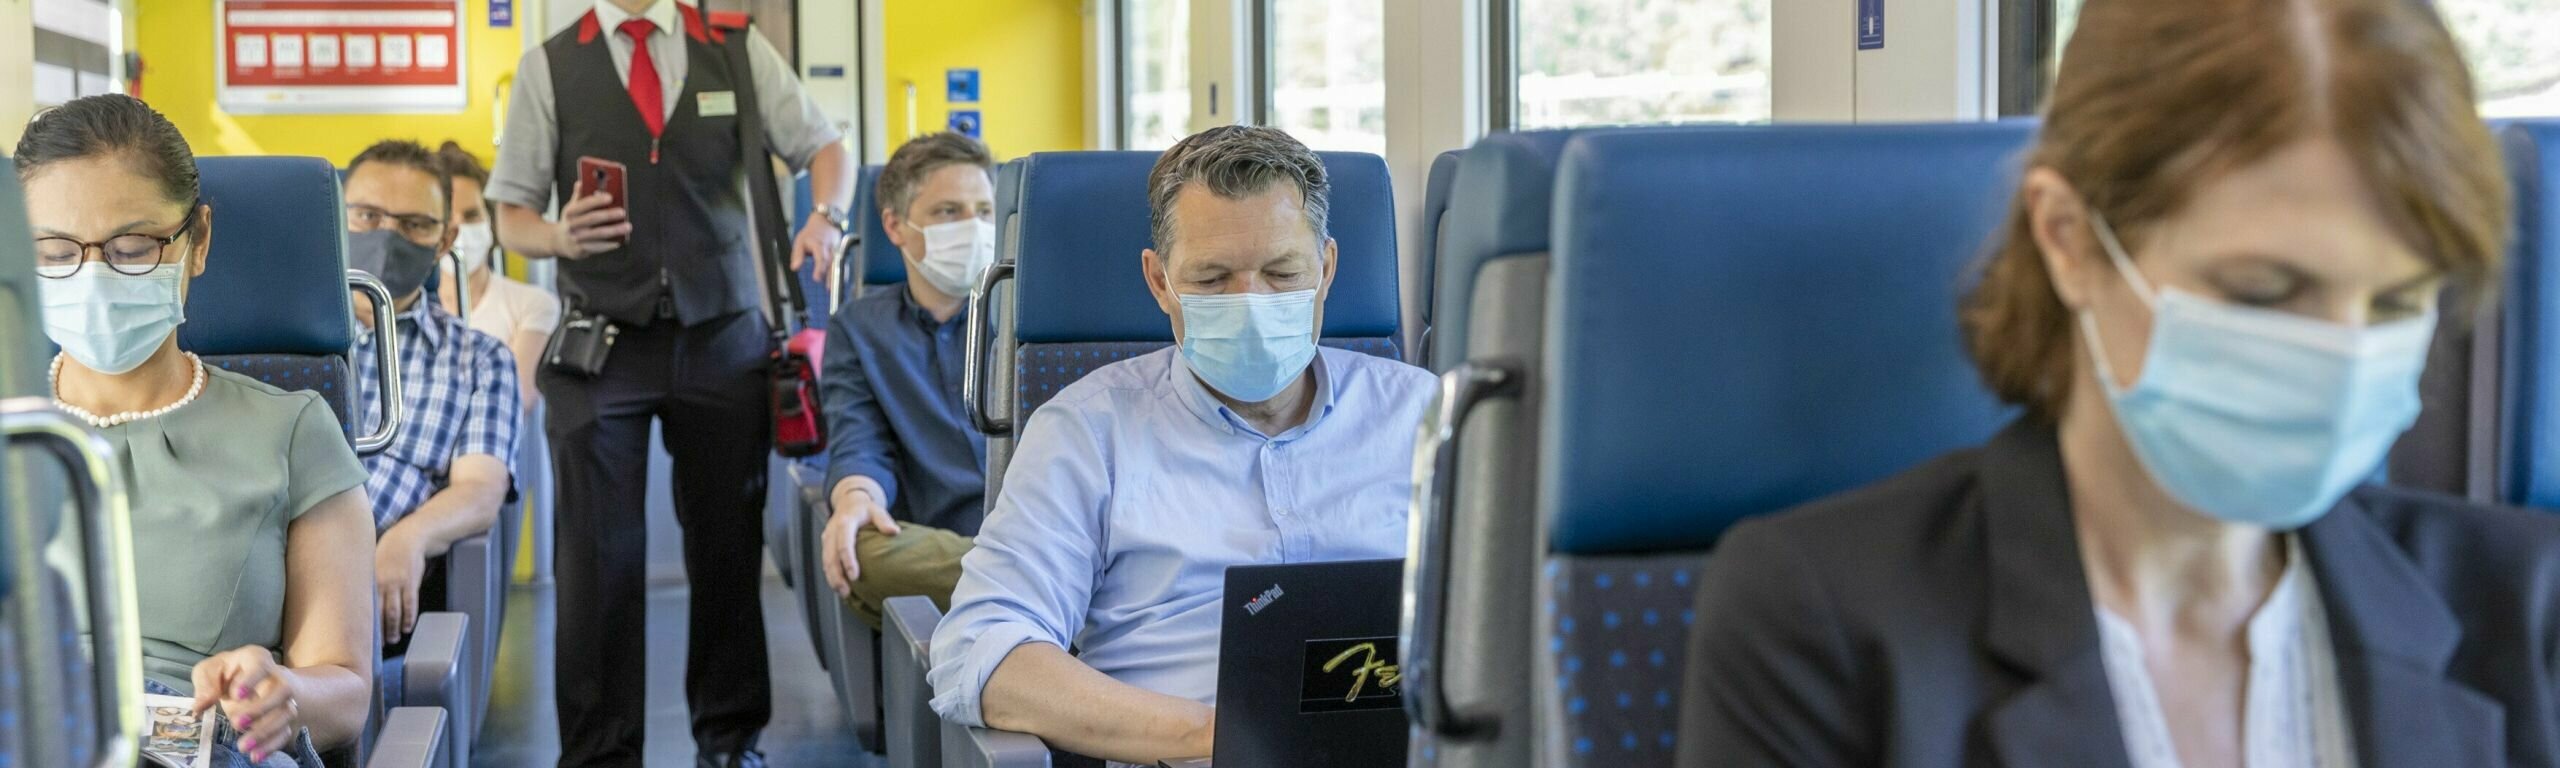 I clienti si siedono sul treno con le maschere.